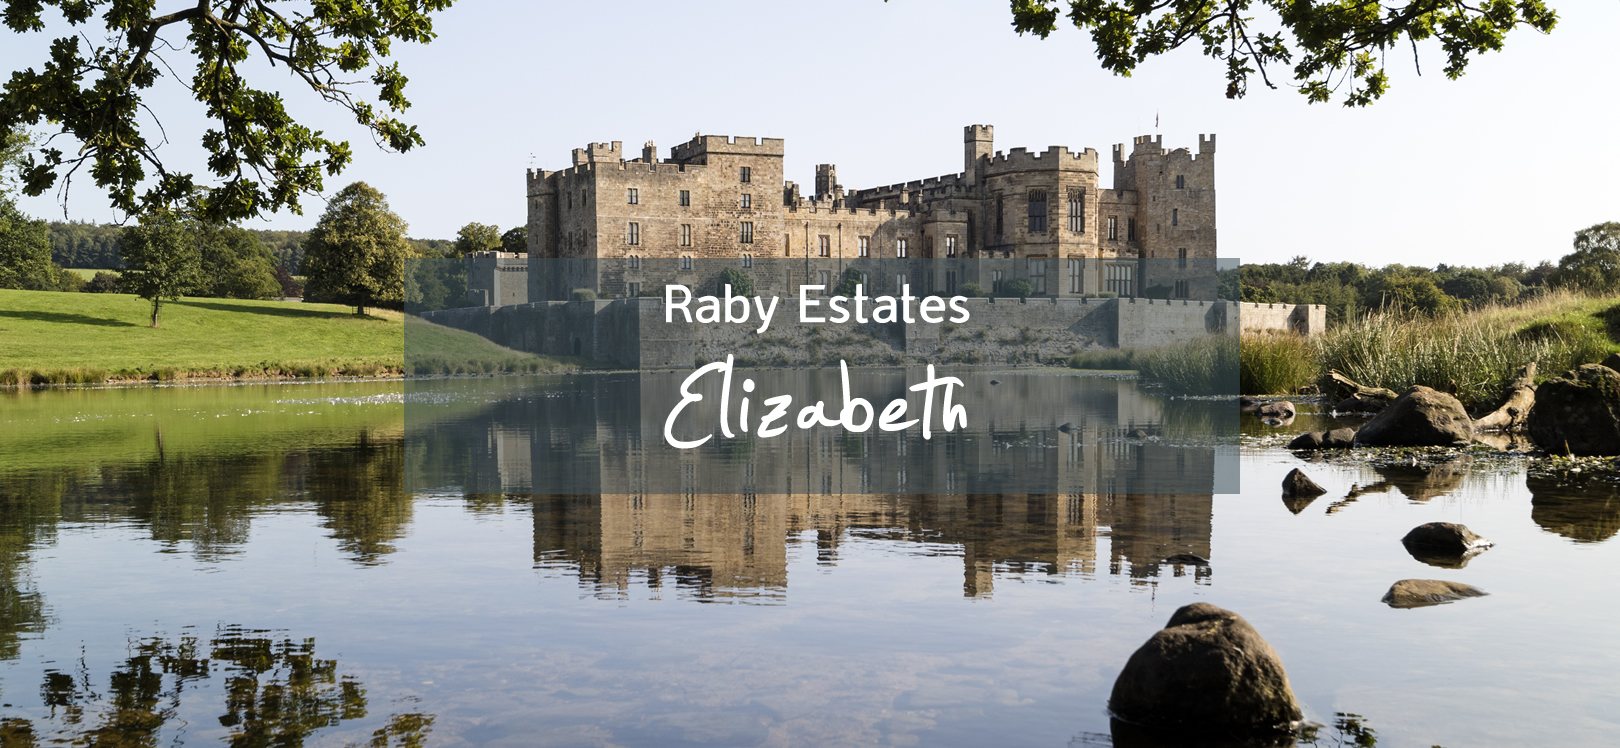 Raby Estates Elizabeth